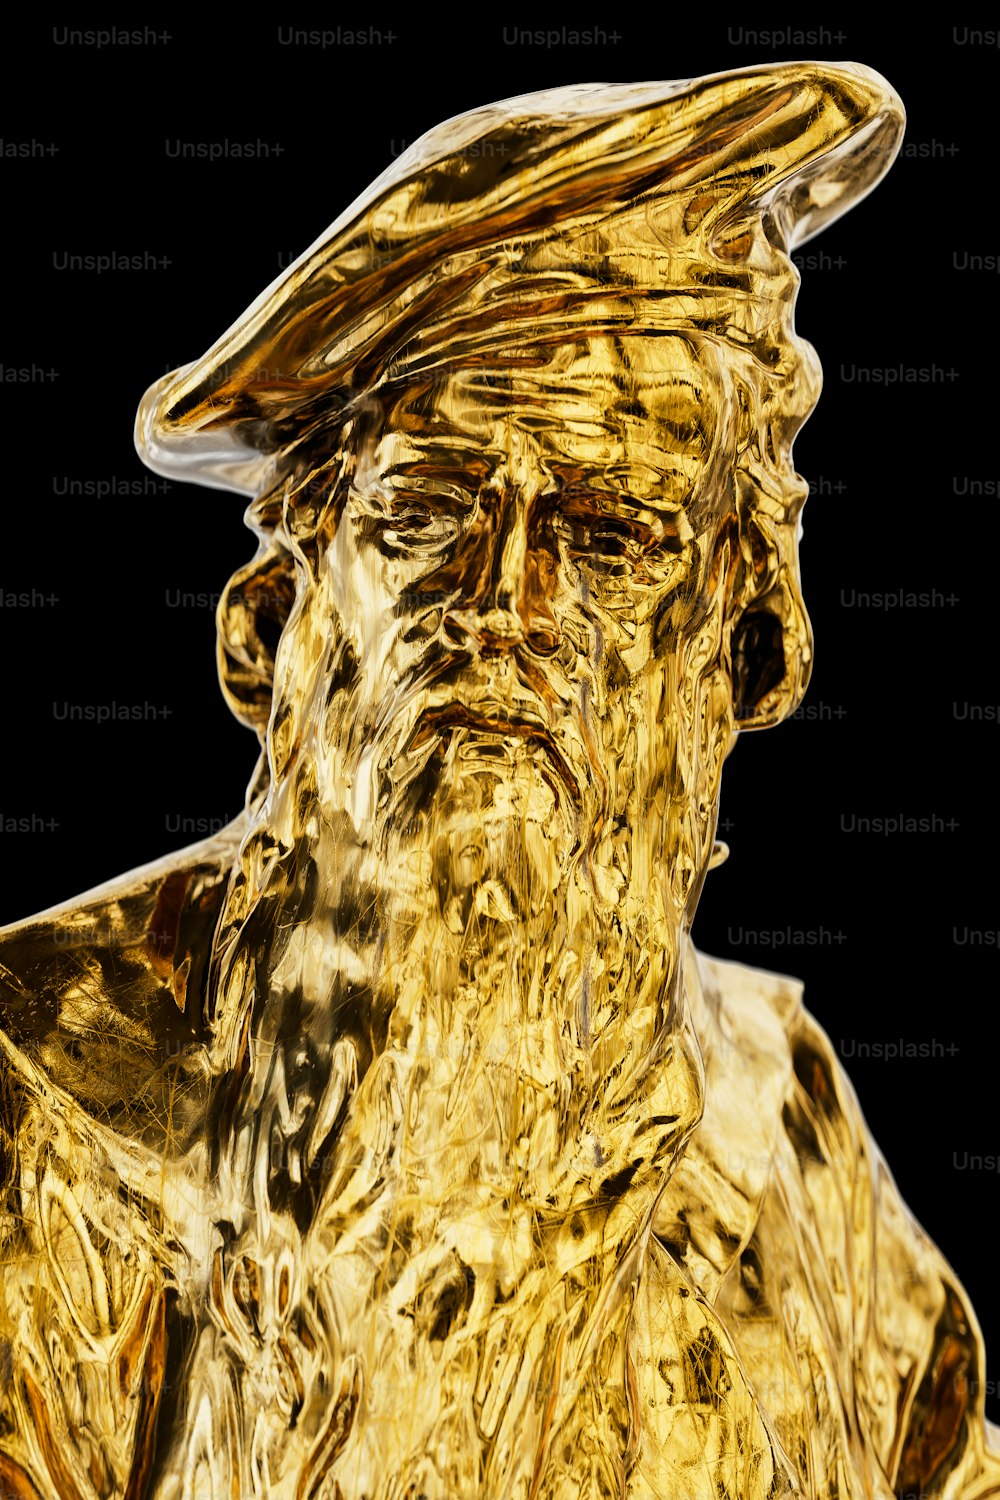 Une statue dorée d’un homme avec un chapeau sur la tête